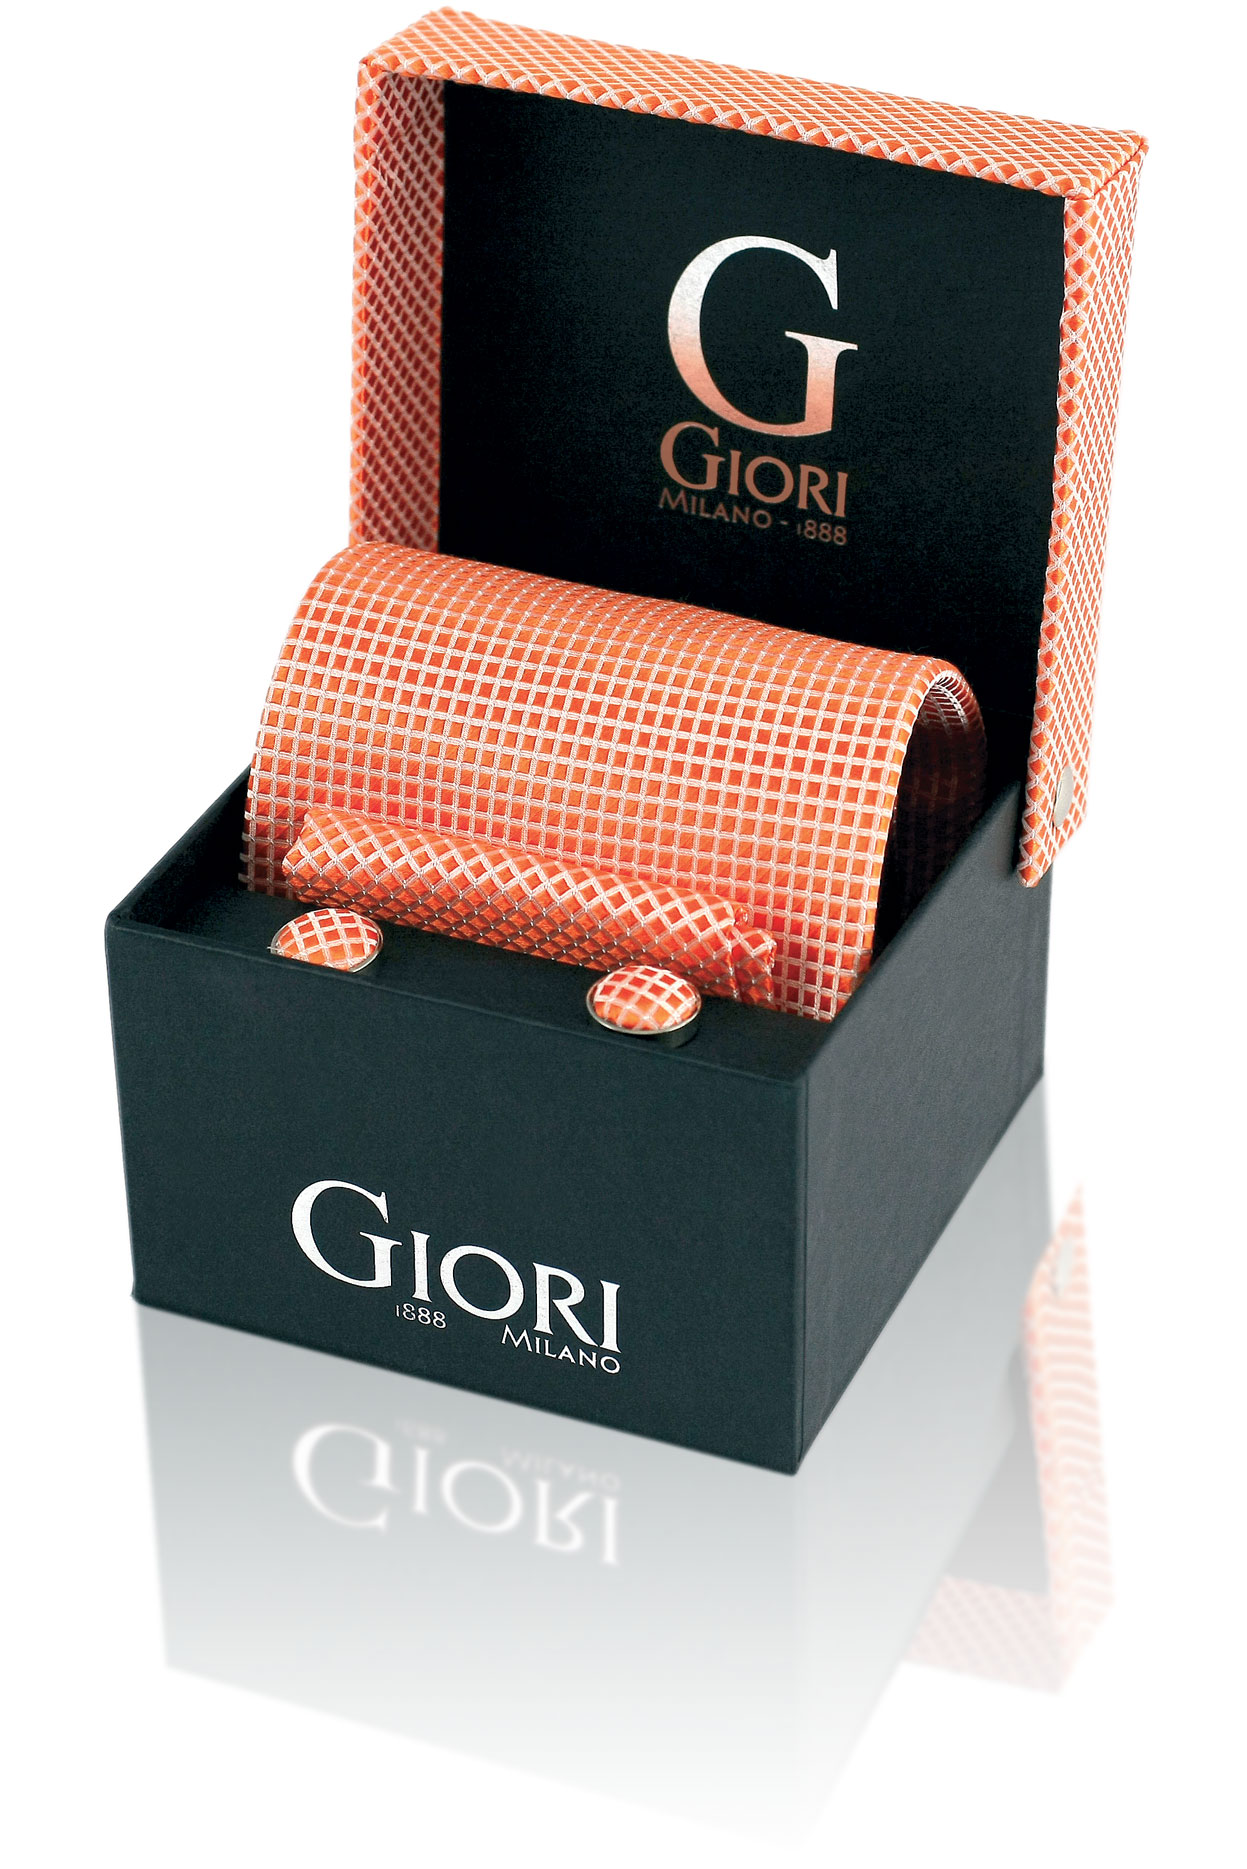 Hedvábná kravata a manžetové knoflíčky Giori Milano RS0801, losos